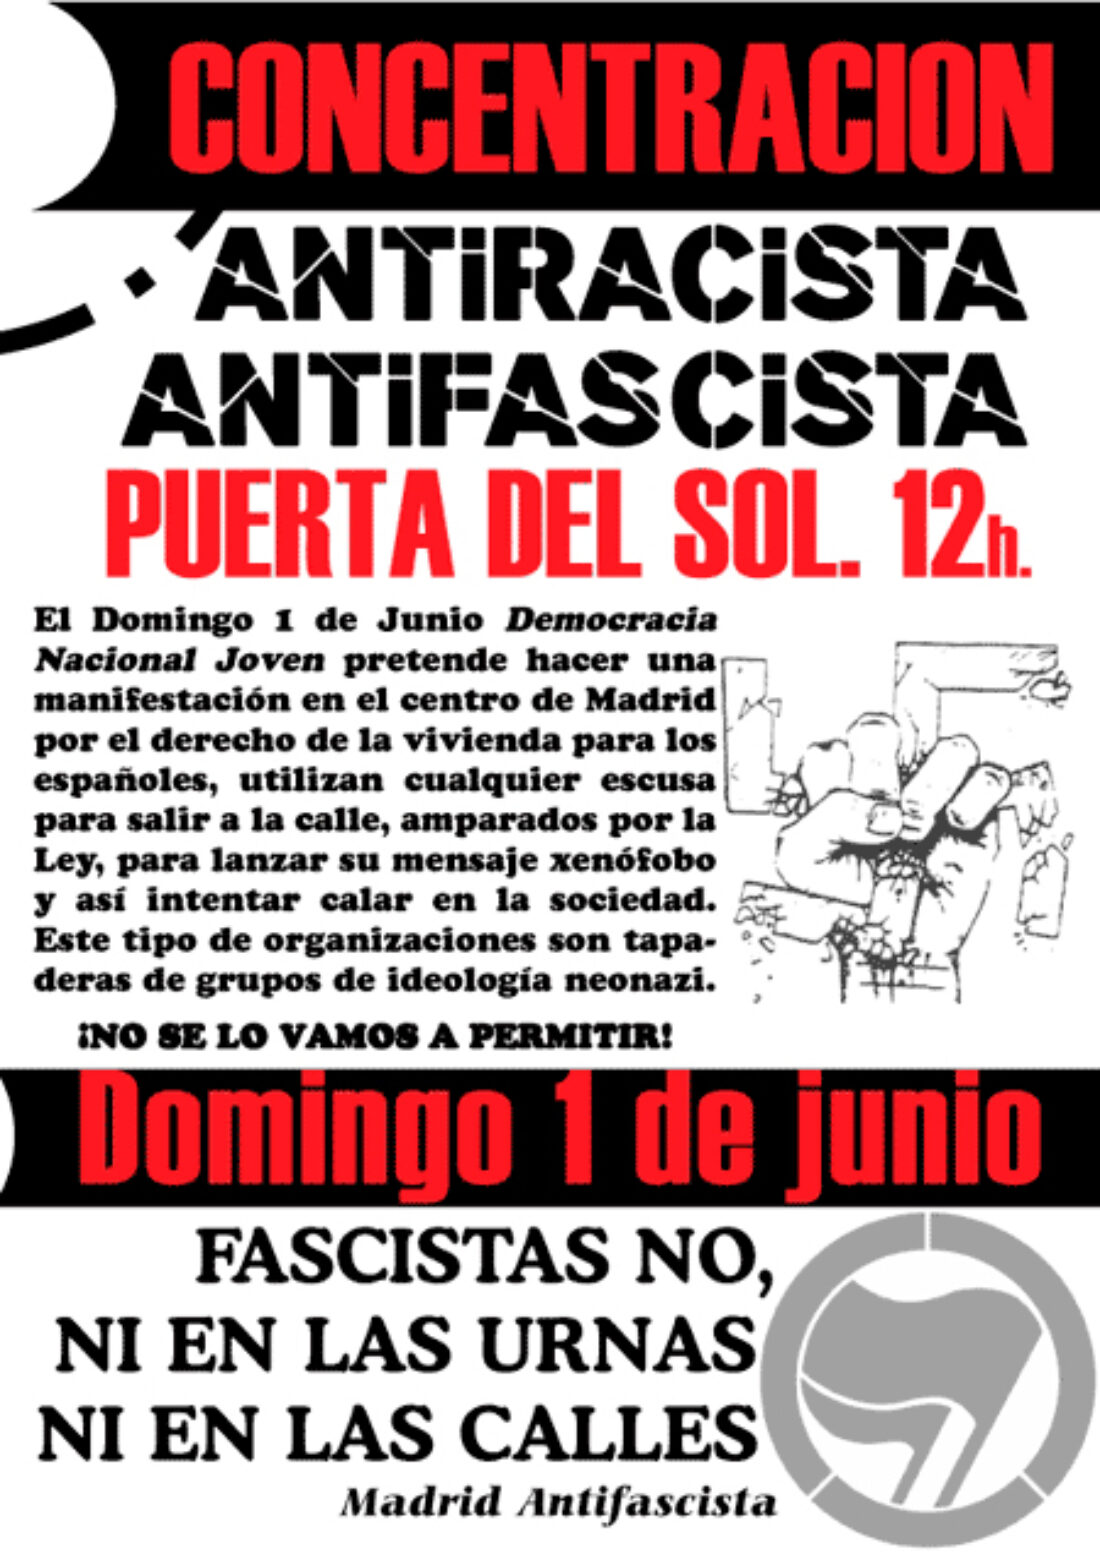 Madrid Antifascista llama a protestar este domingo contra una manifestación de Democracia Nacional